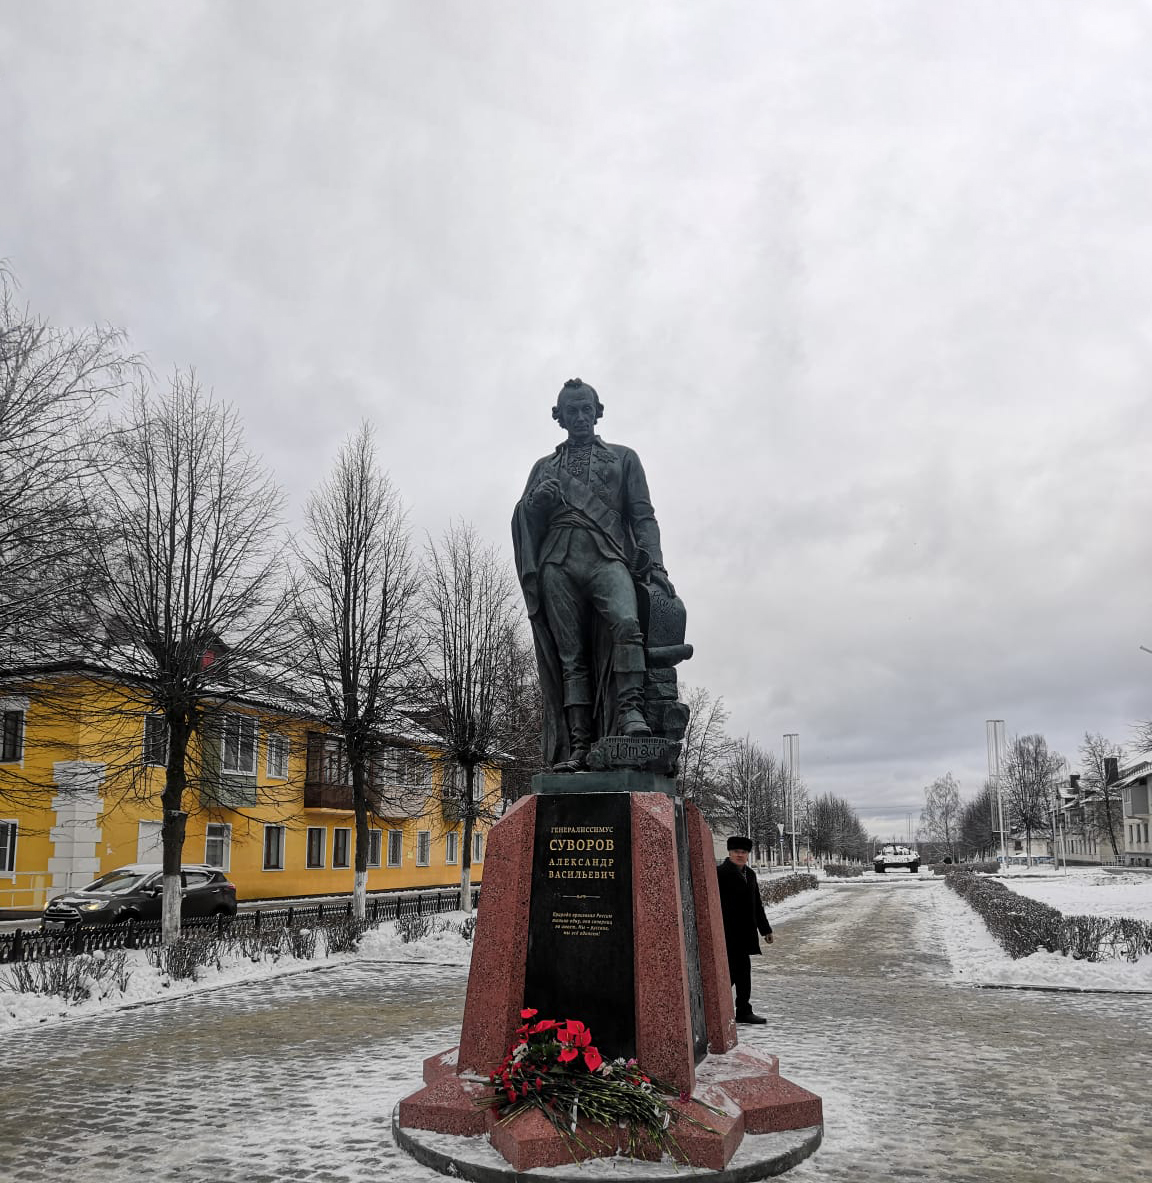 В Суворове открыли памятник великому полководцу Александру Васильевичу Суворову